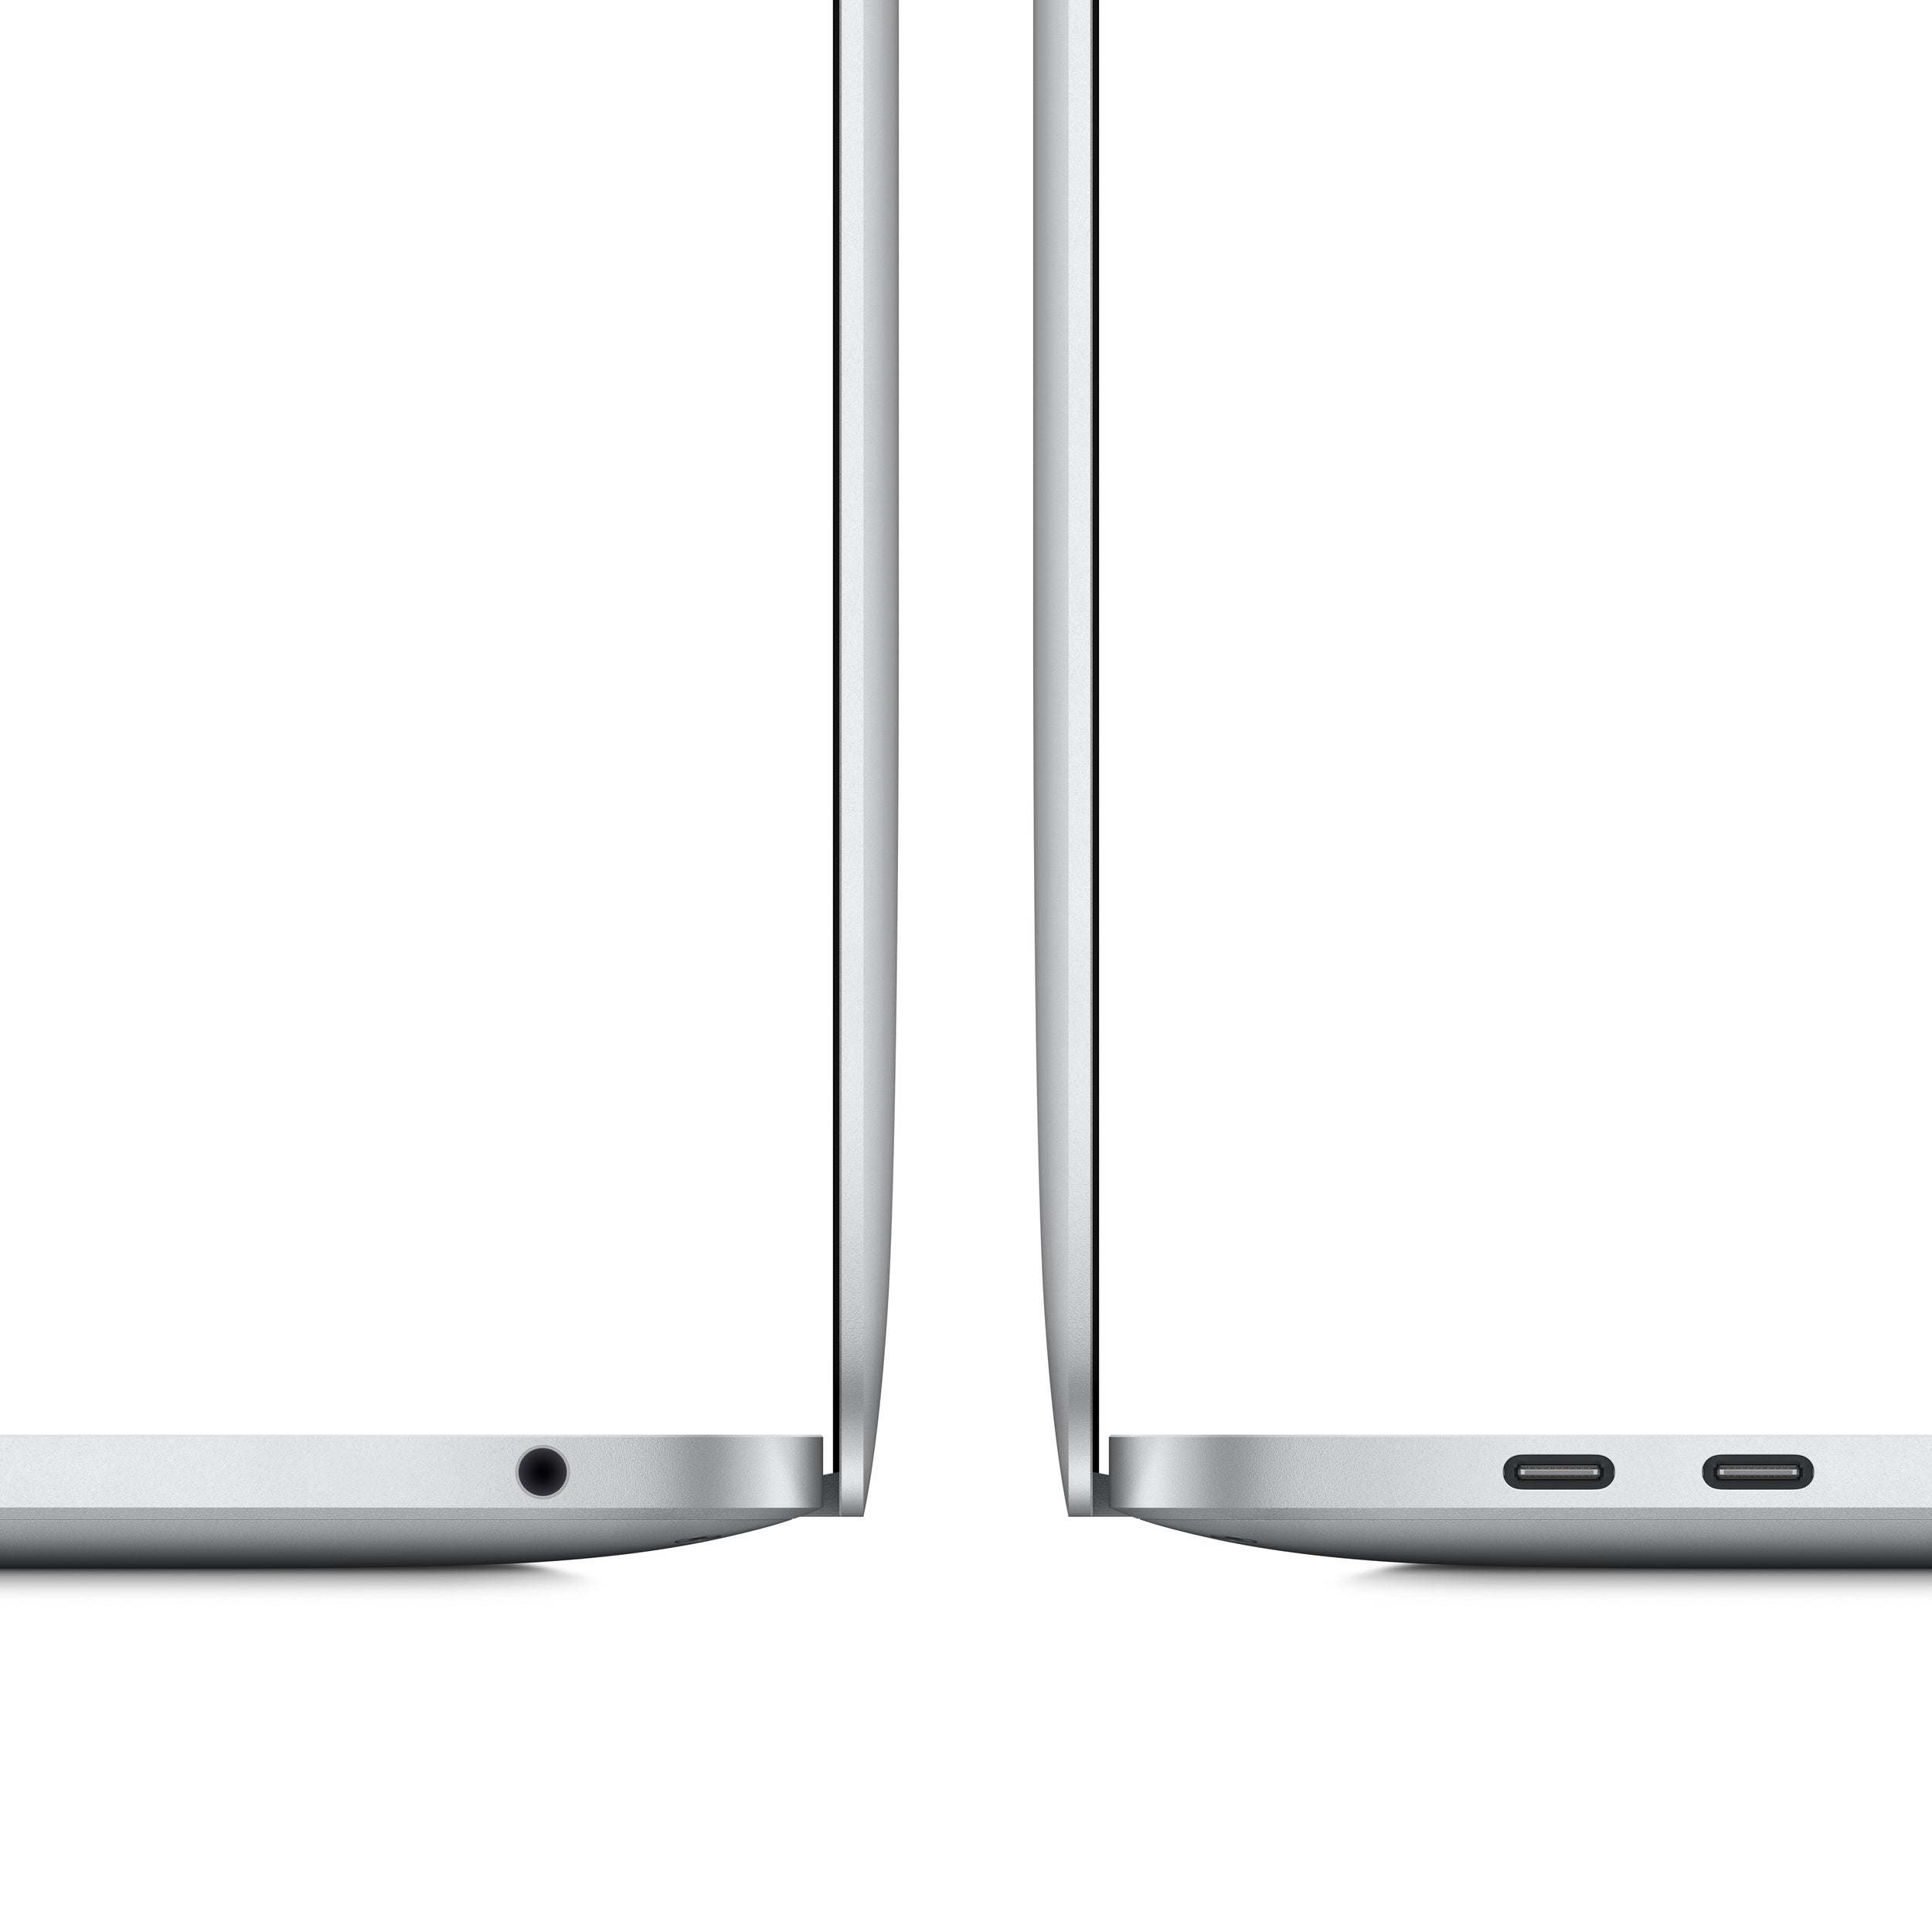 Macbook Apple Myda2La/A 8 Gb 256 13.3 Pulgadas